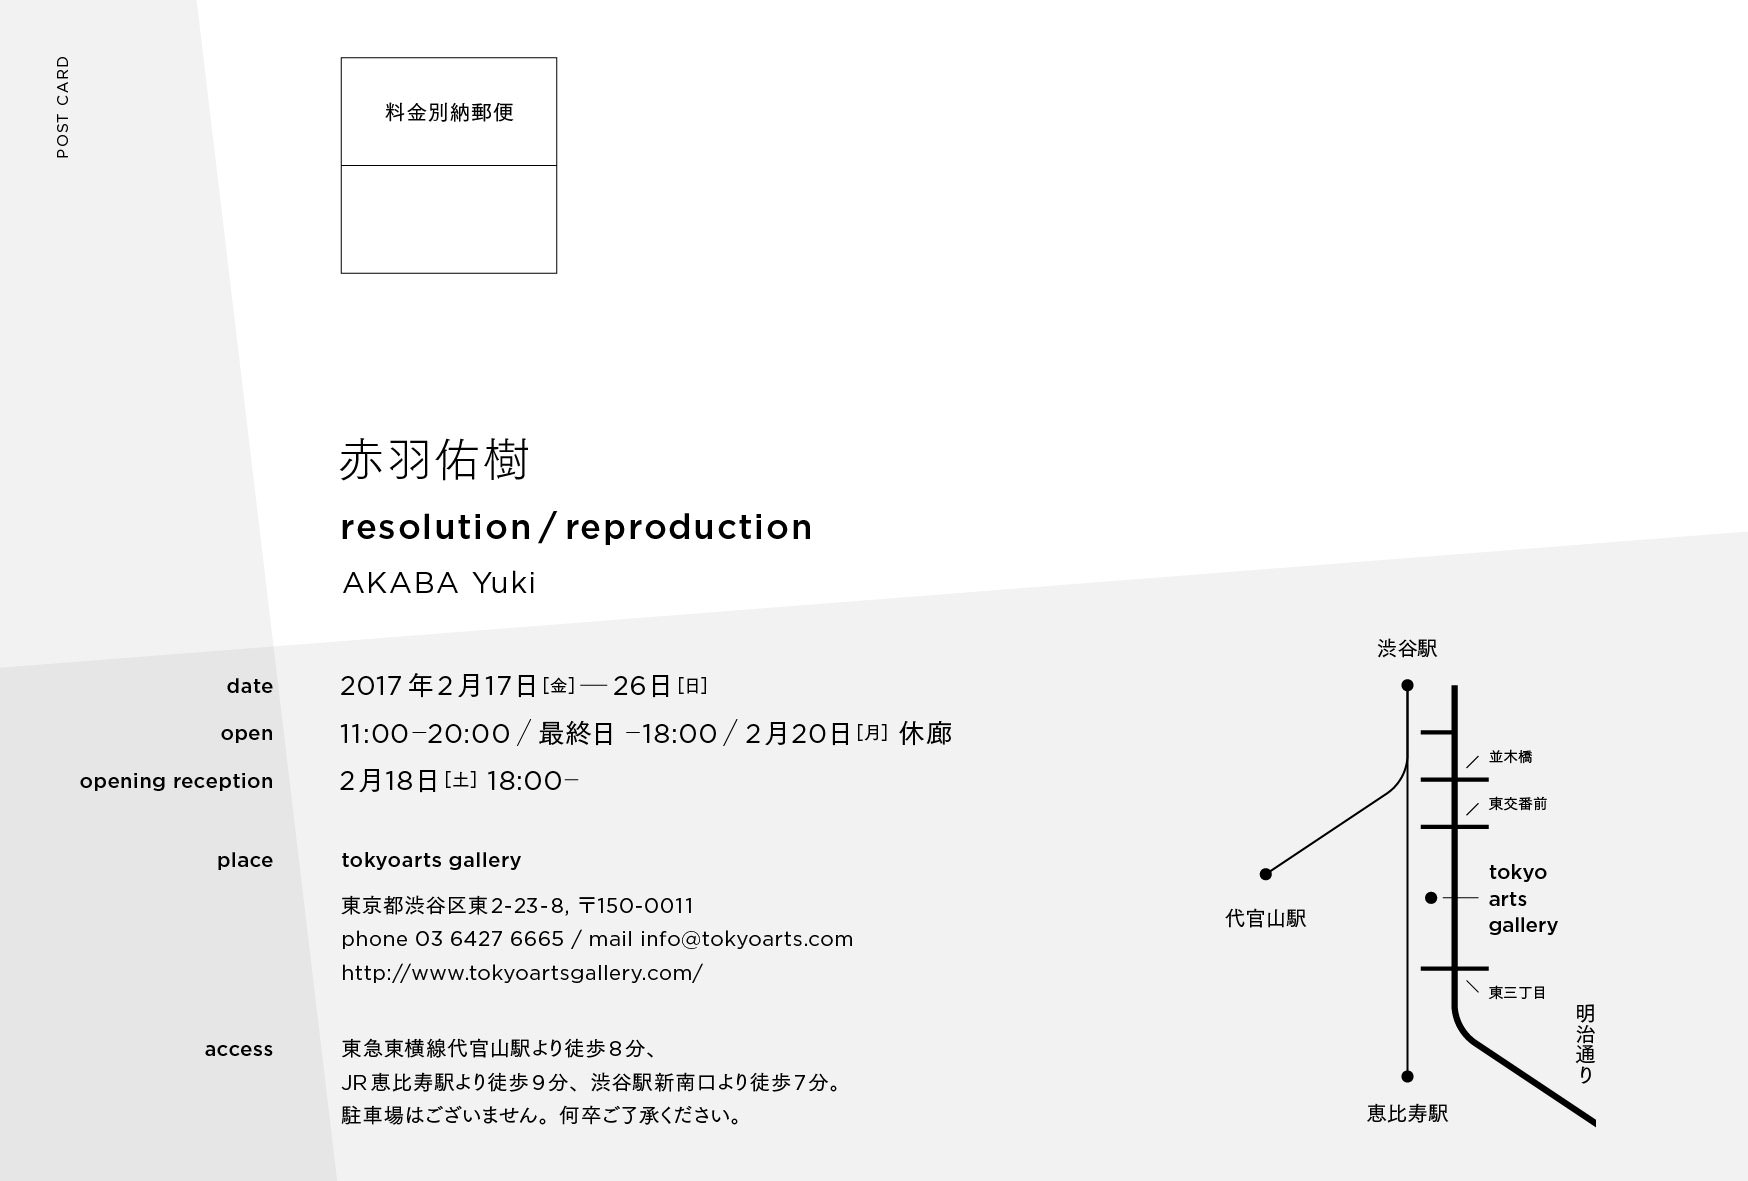 赤羽佑樹「resolution / reproduction」 Akaba Yuki “resolution / reproduction” - tokyo arts gallery